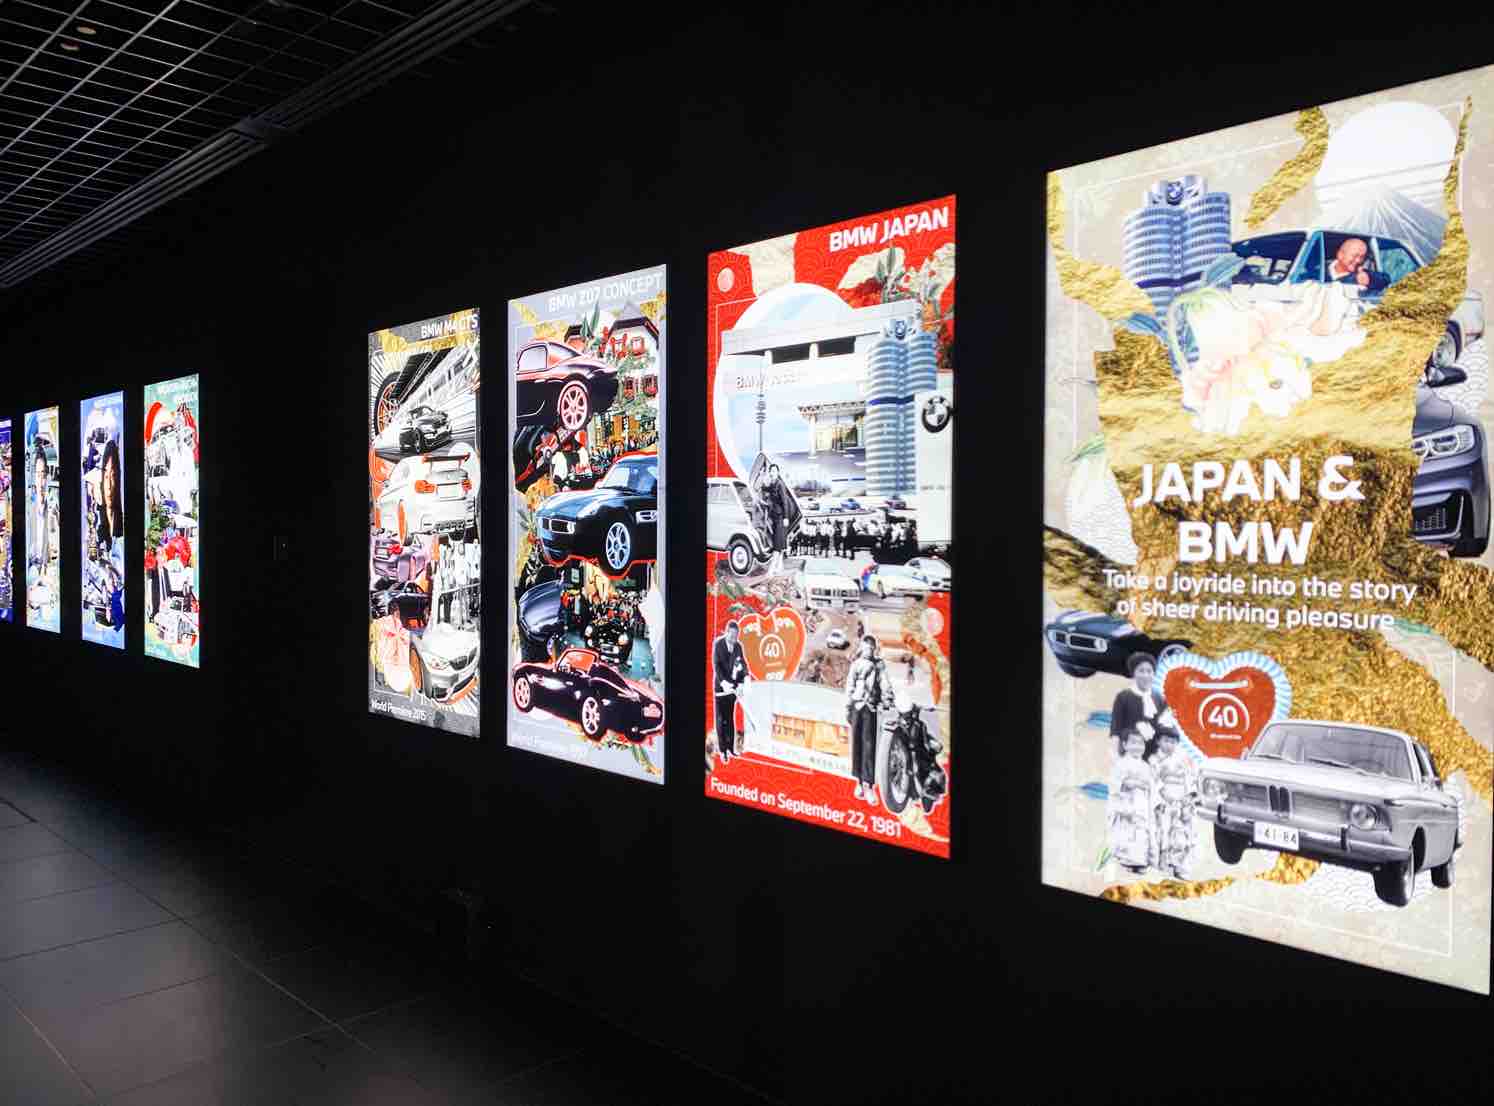 二階の廊下には日本とBMWの歴史を辿るアートコラージュを展示